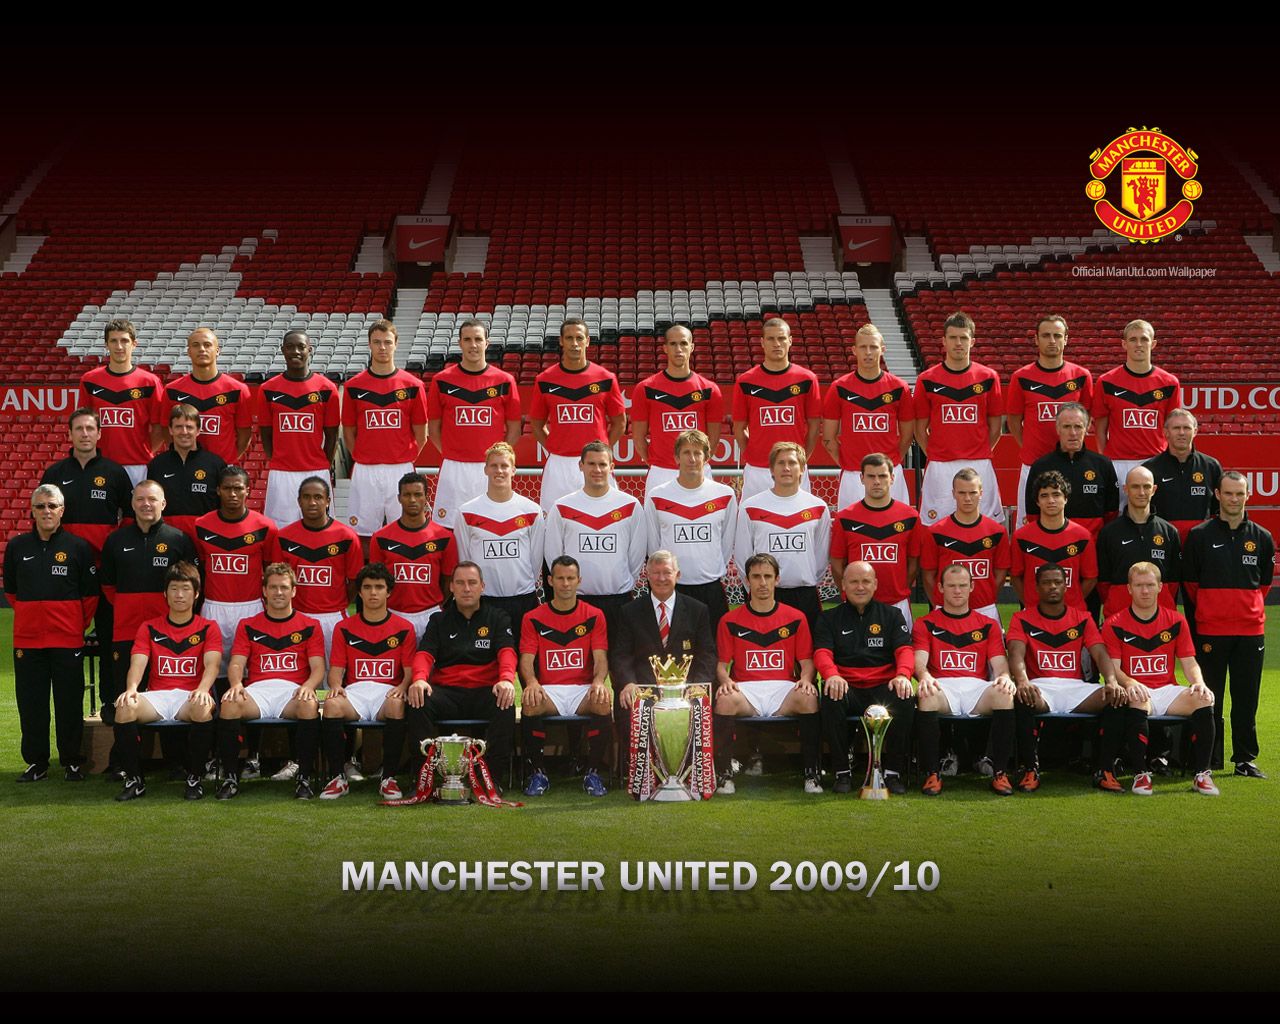 http://4.bp.blogspot.com/-9GZ6WroQYJM/TgTkpnrTe1I/AAAAAAAABBQ/funpBJUuFuQ/s1600/Manchester-United-Squad-Wallpaper-2009-2010.jpeg